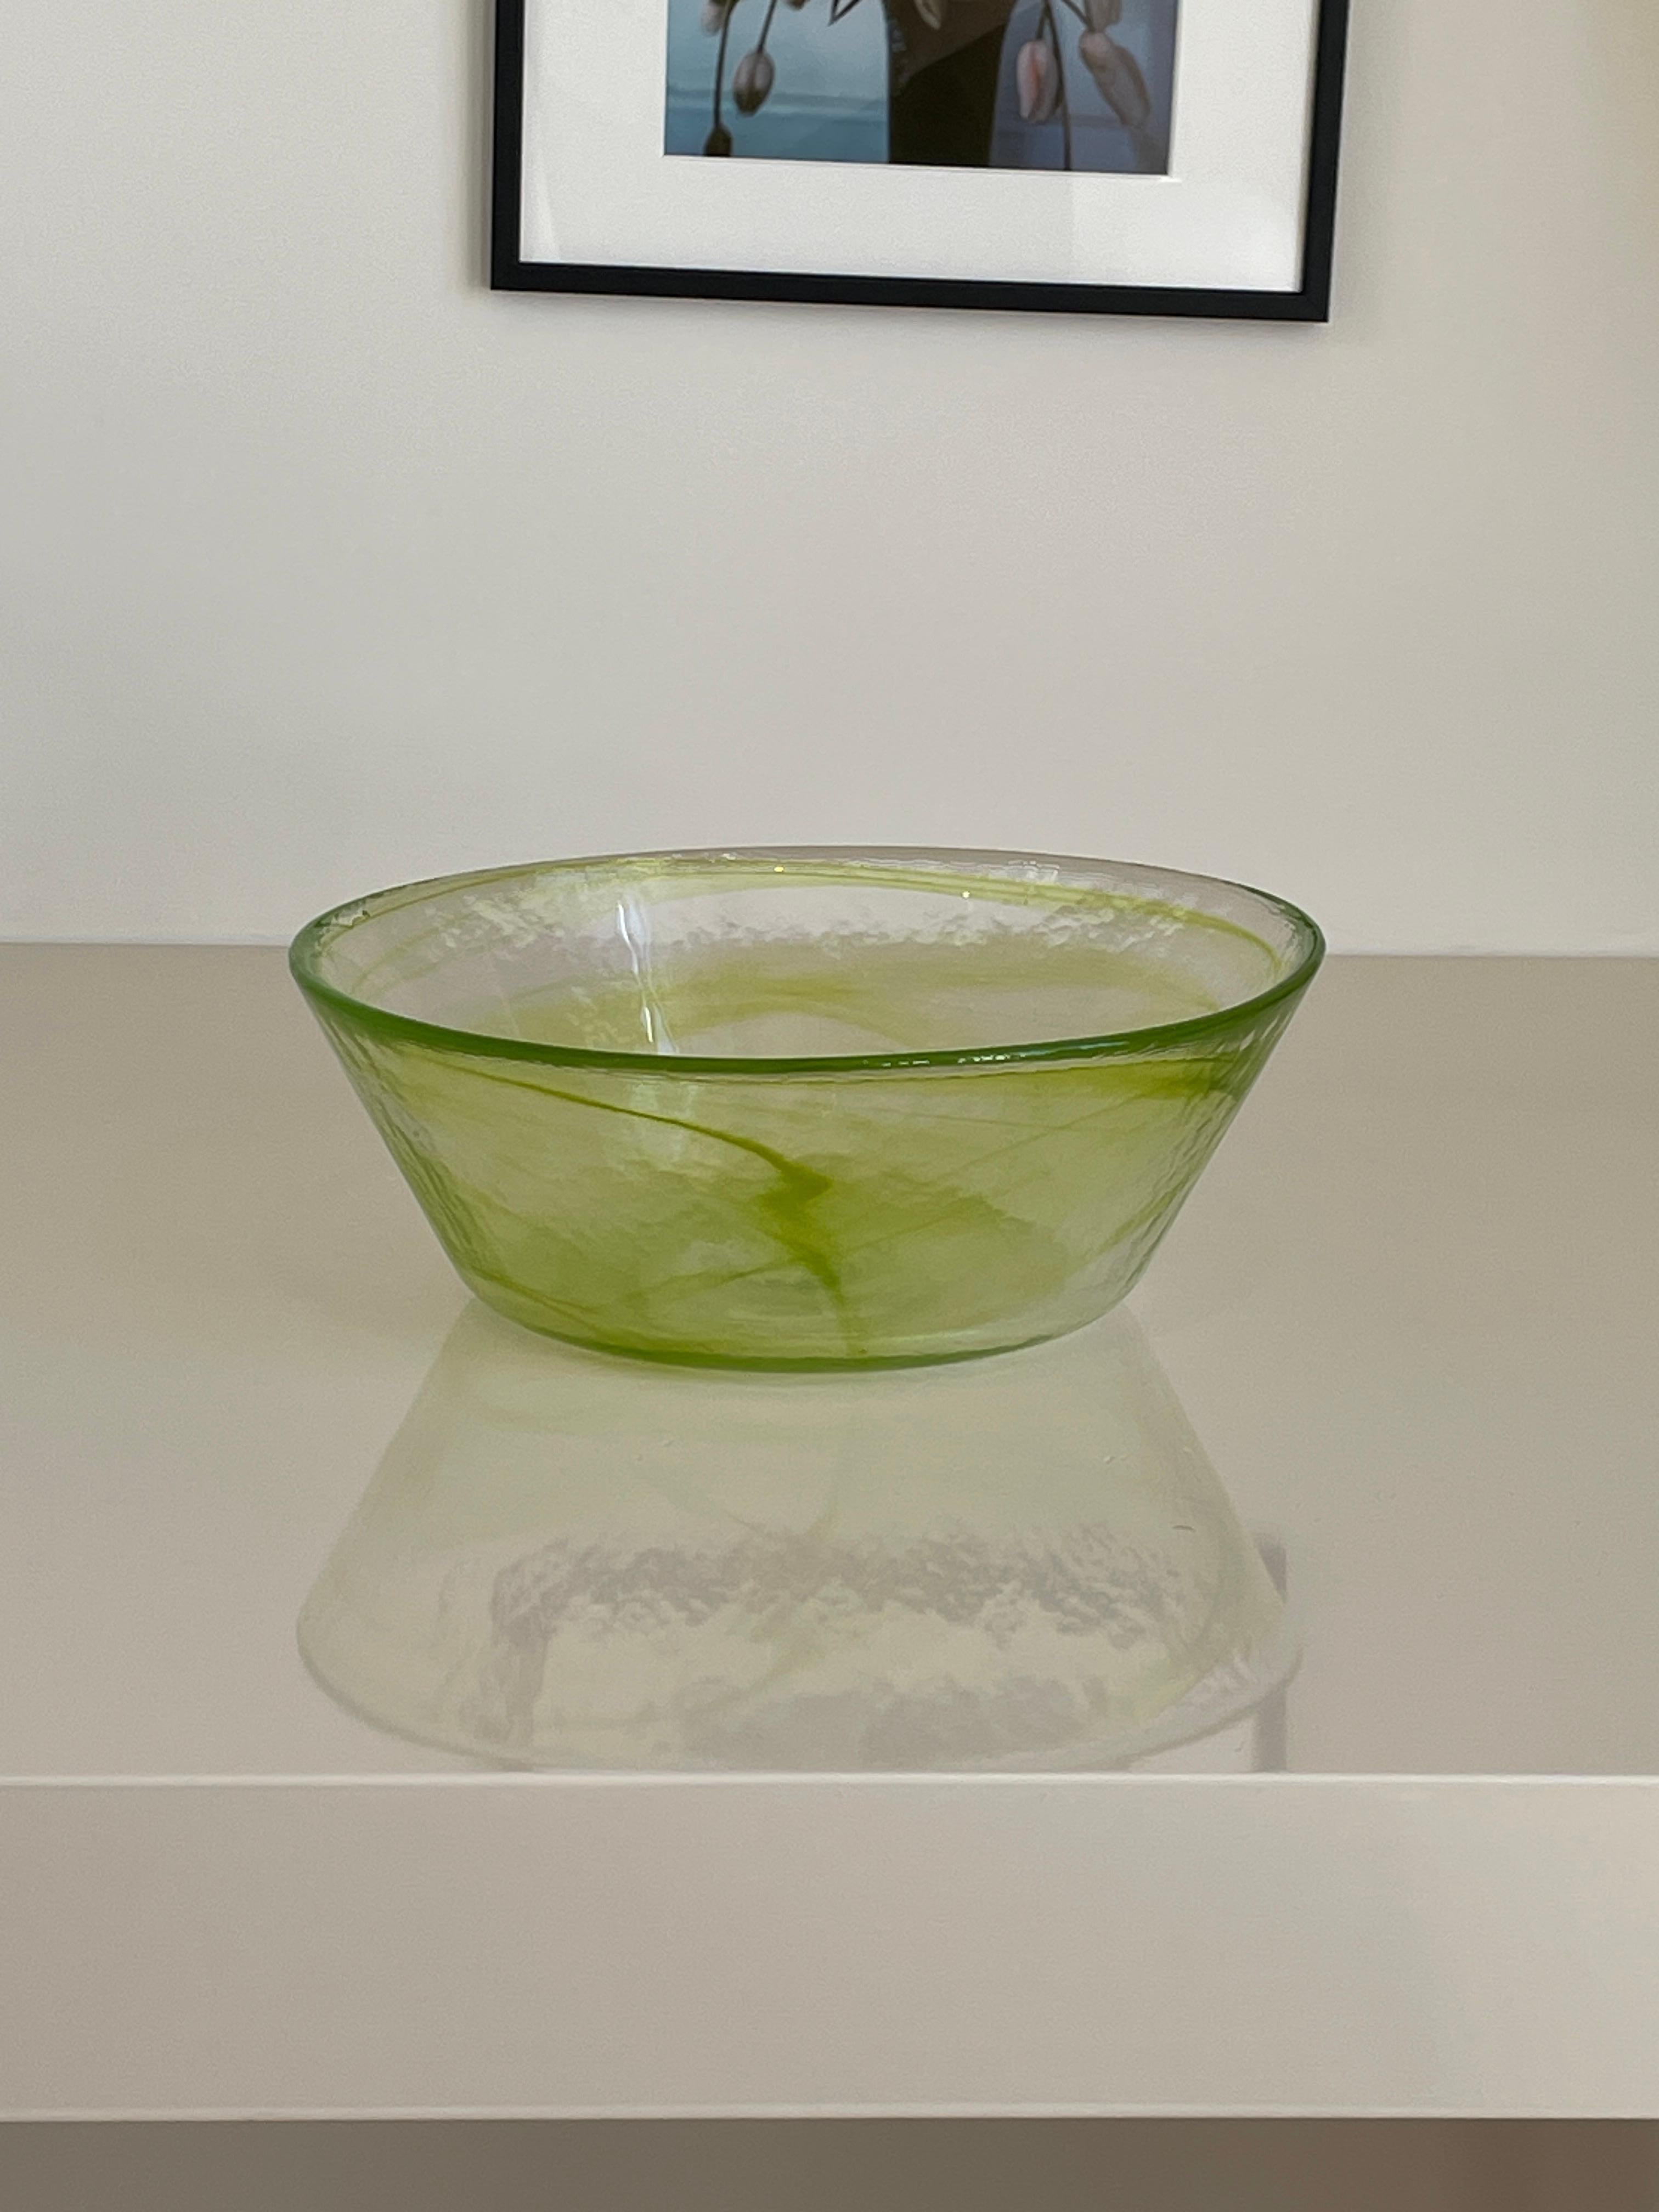 Height: 10cm
Diameter: 26cm

Designer: Ulrica Hydman-Vallien
Date: 1990s
Materials: Glass

Description: Famed glass artist Hydman-Vallien’s beautfiful function design of a spun green glass bowl
